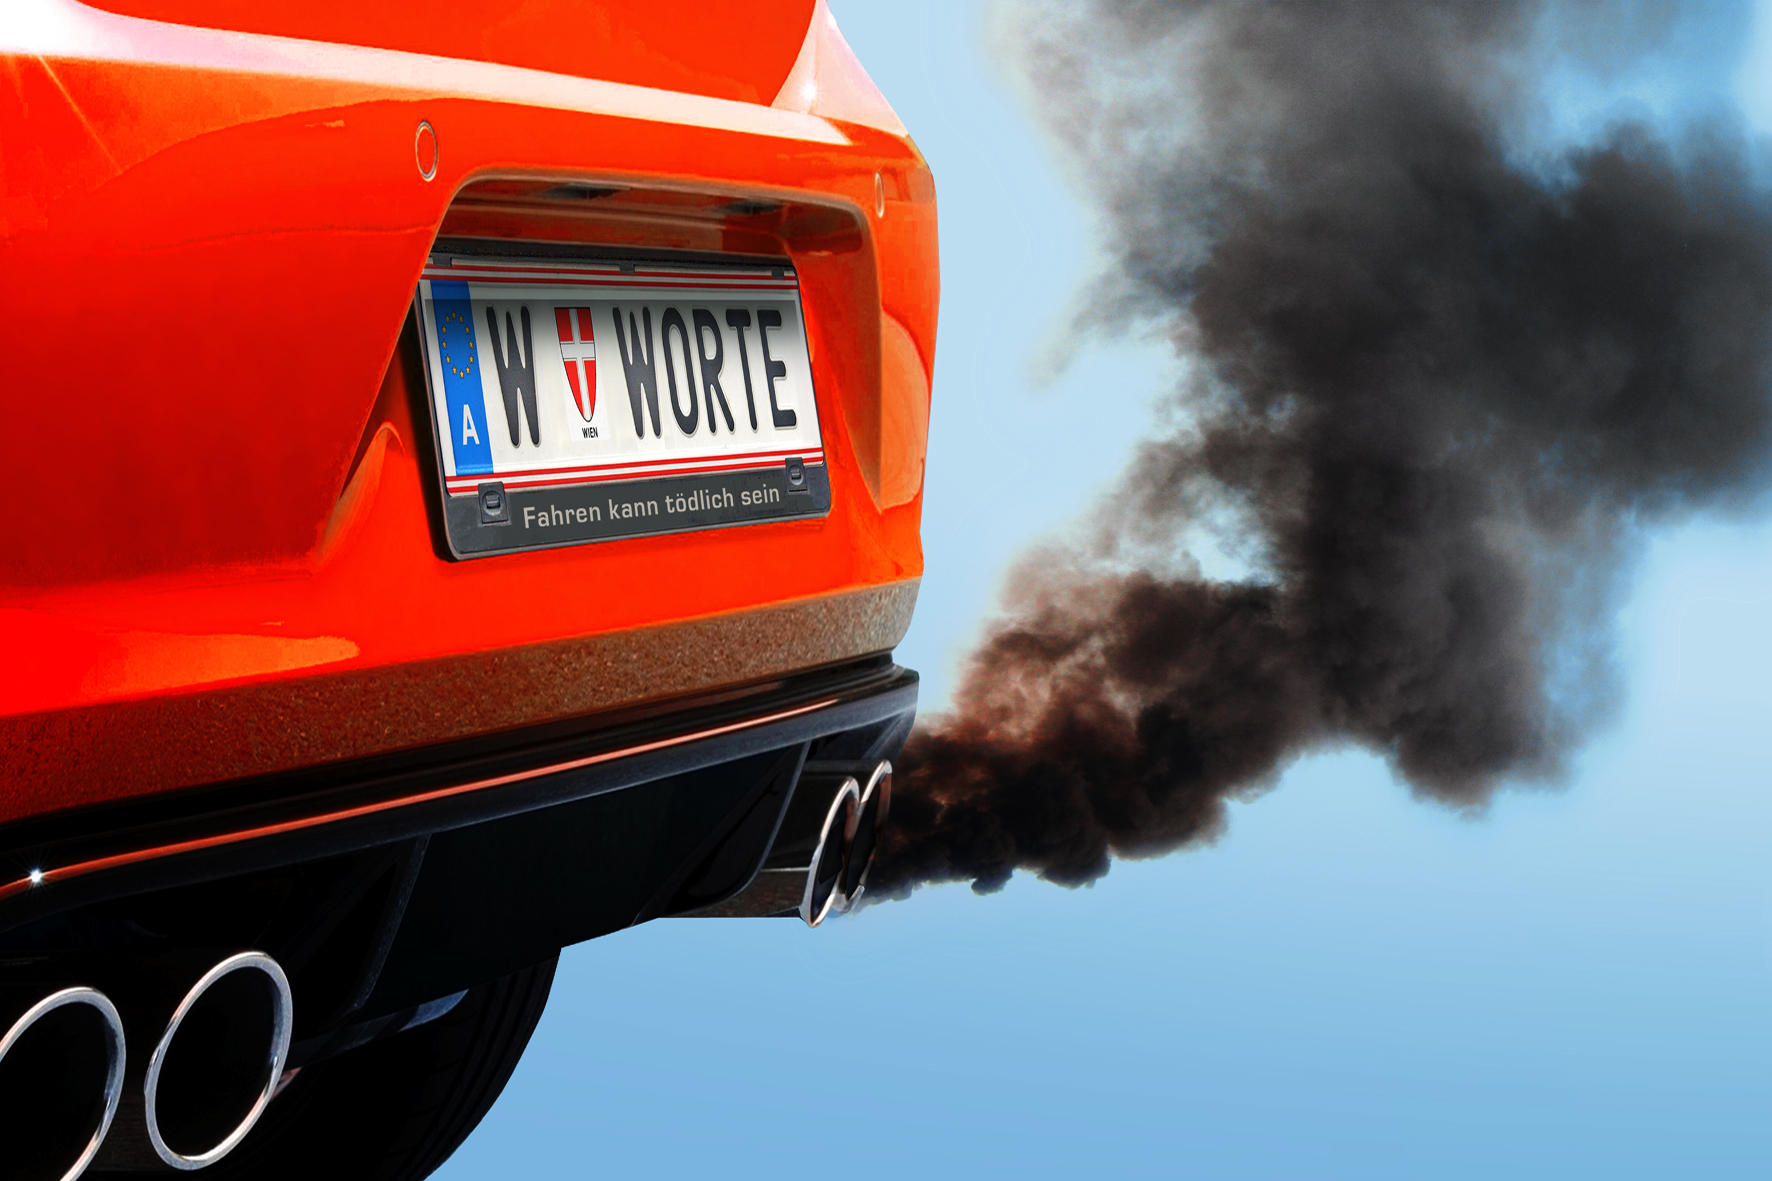 66 Milliarden Euro jährliche Schäden durch Auto-Abgase - Unsere